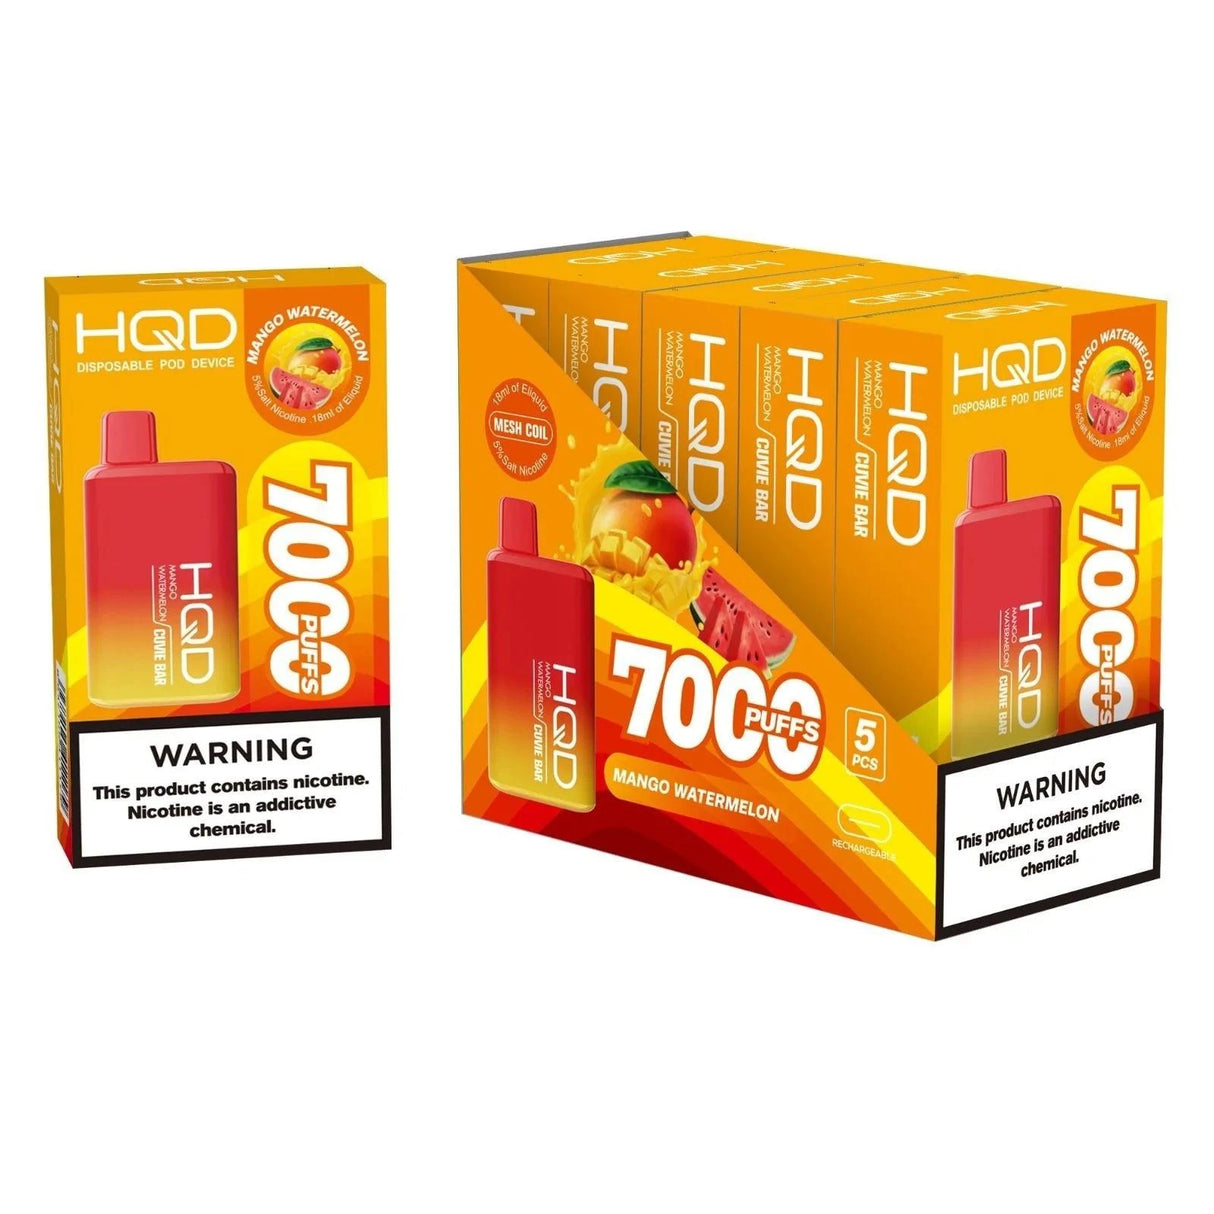 HQD Cuvie Bar 7000 Puffs Disposable Vape - 3 Pack-